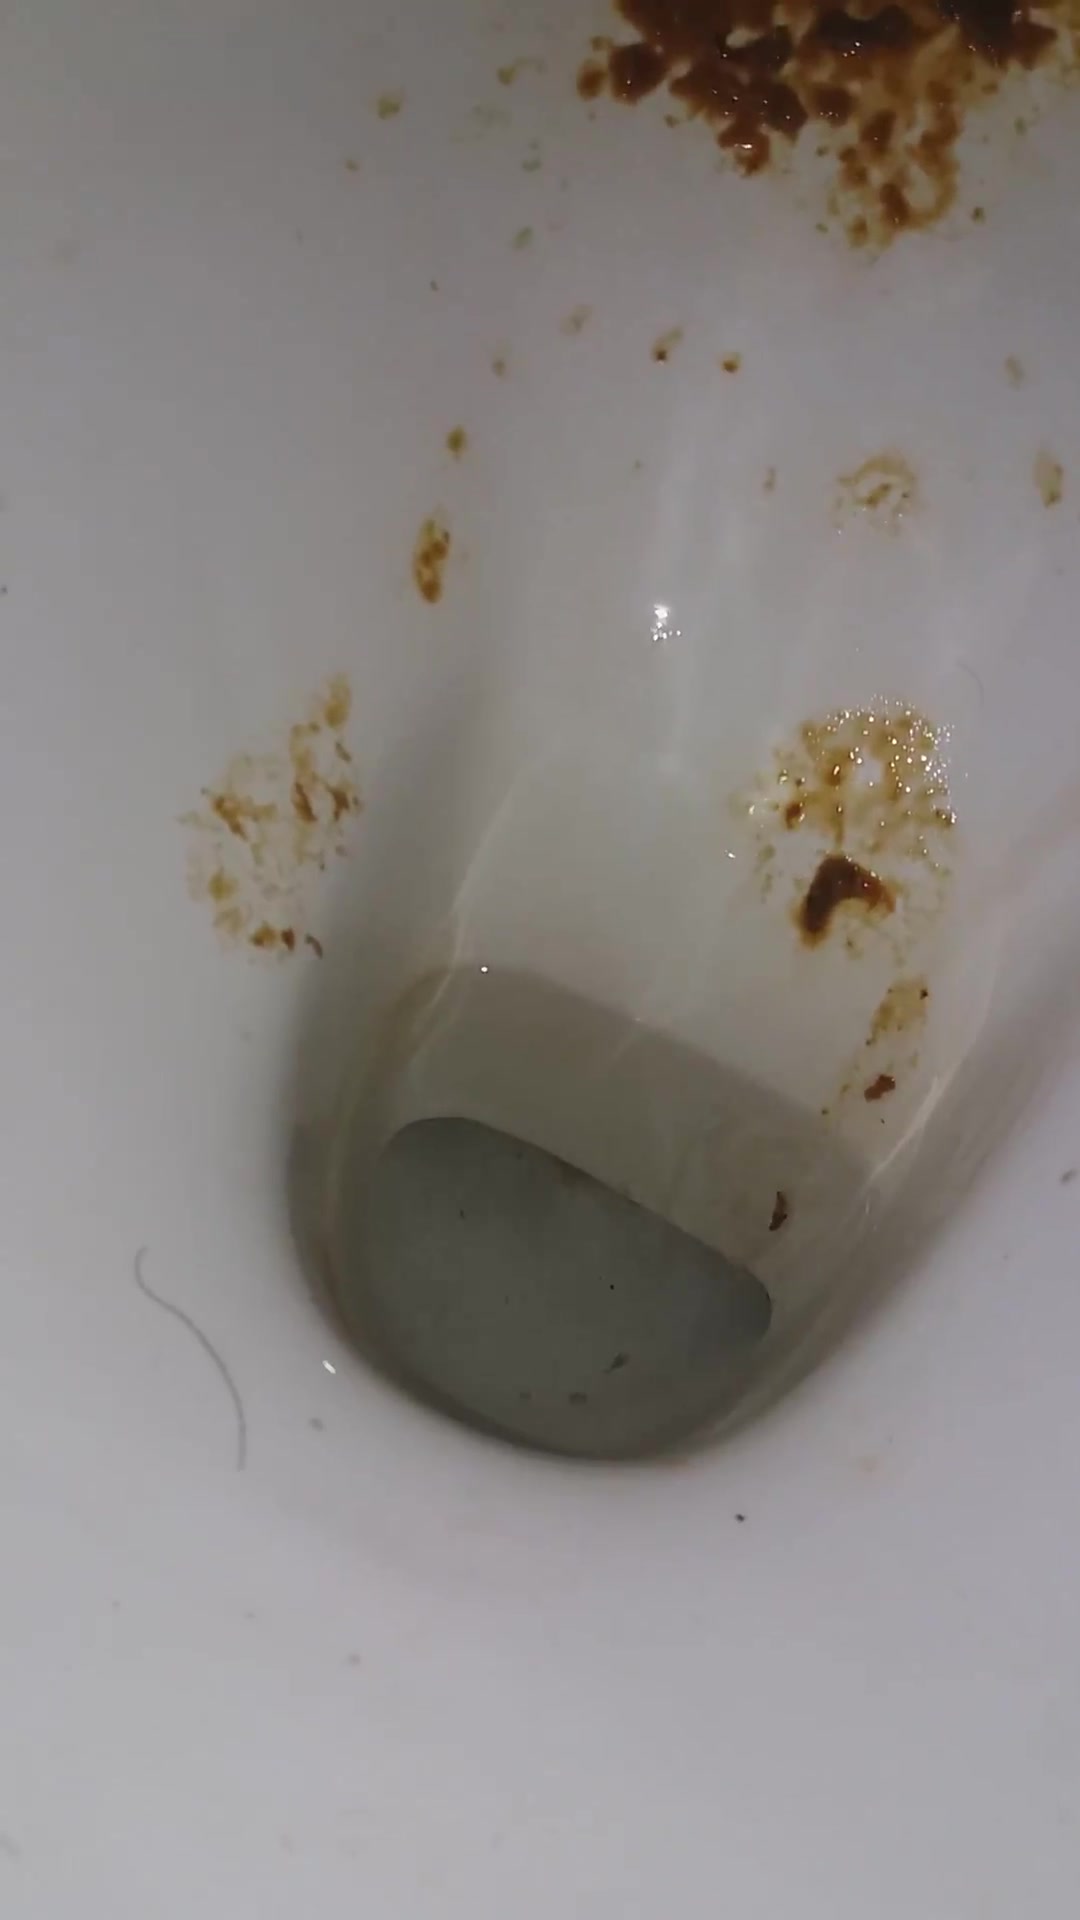 diarrhea - video 52